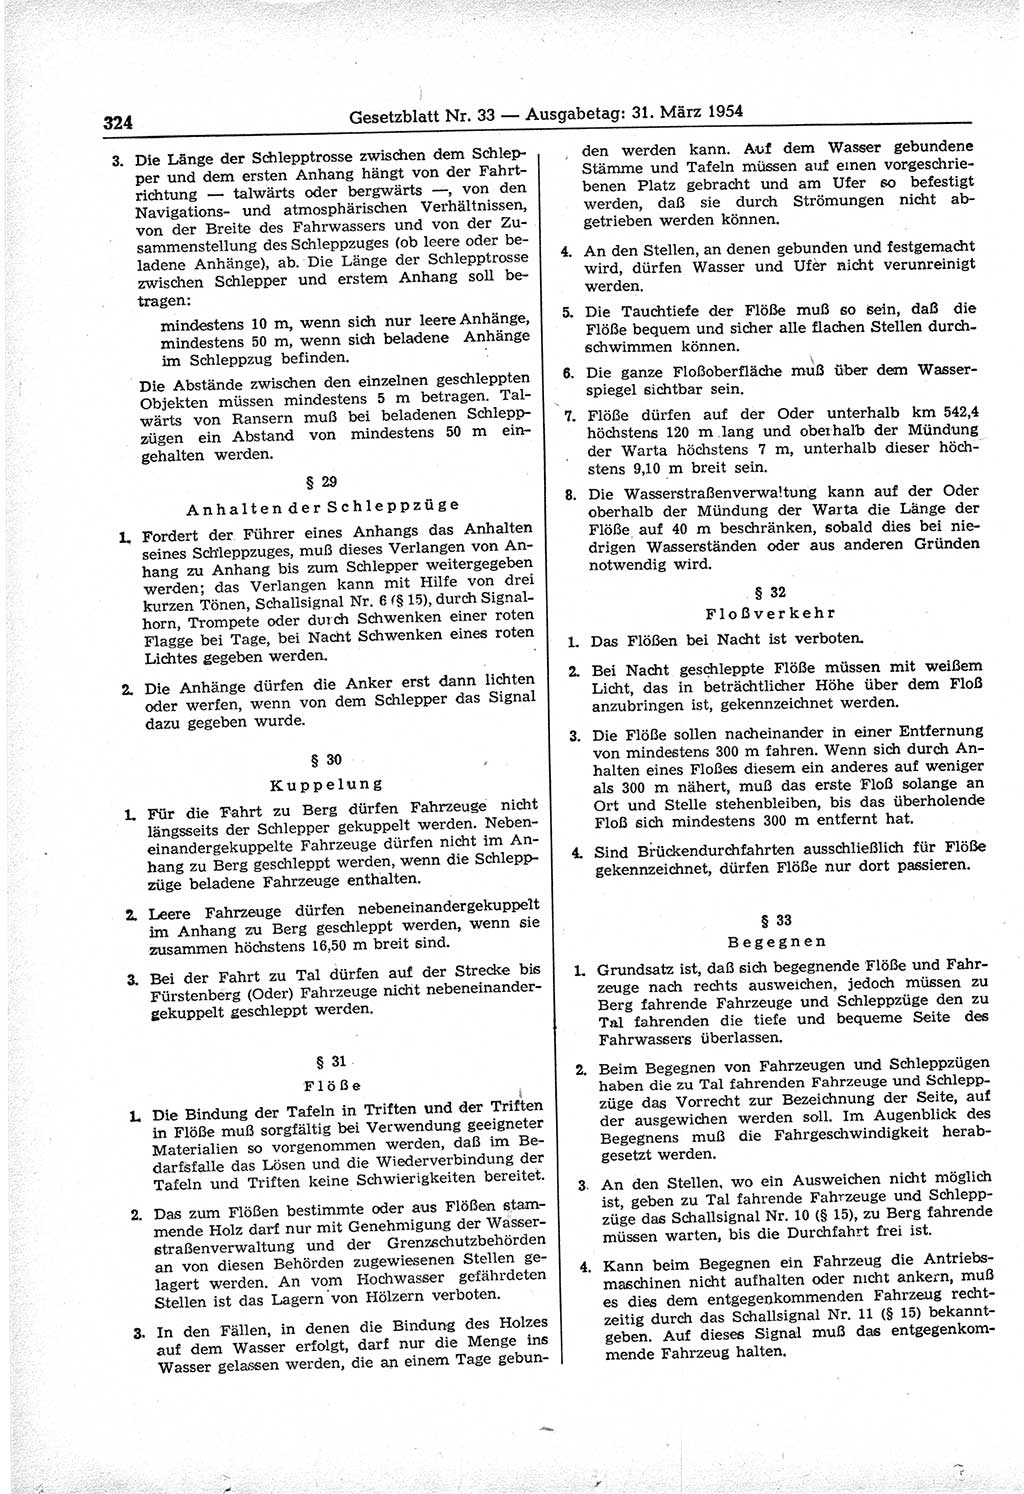 Gesetzblatt (GBl.) der Deutschen Demokratischen Republik (DDR) 1954, Seite 324 (GBl. DDR 1954, S. 324)